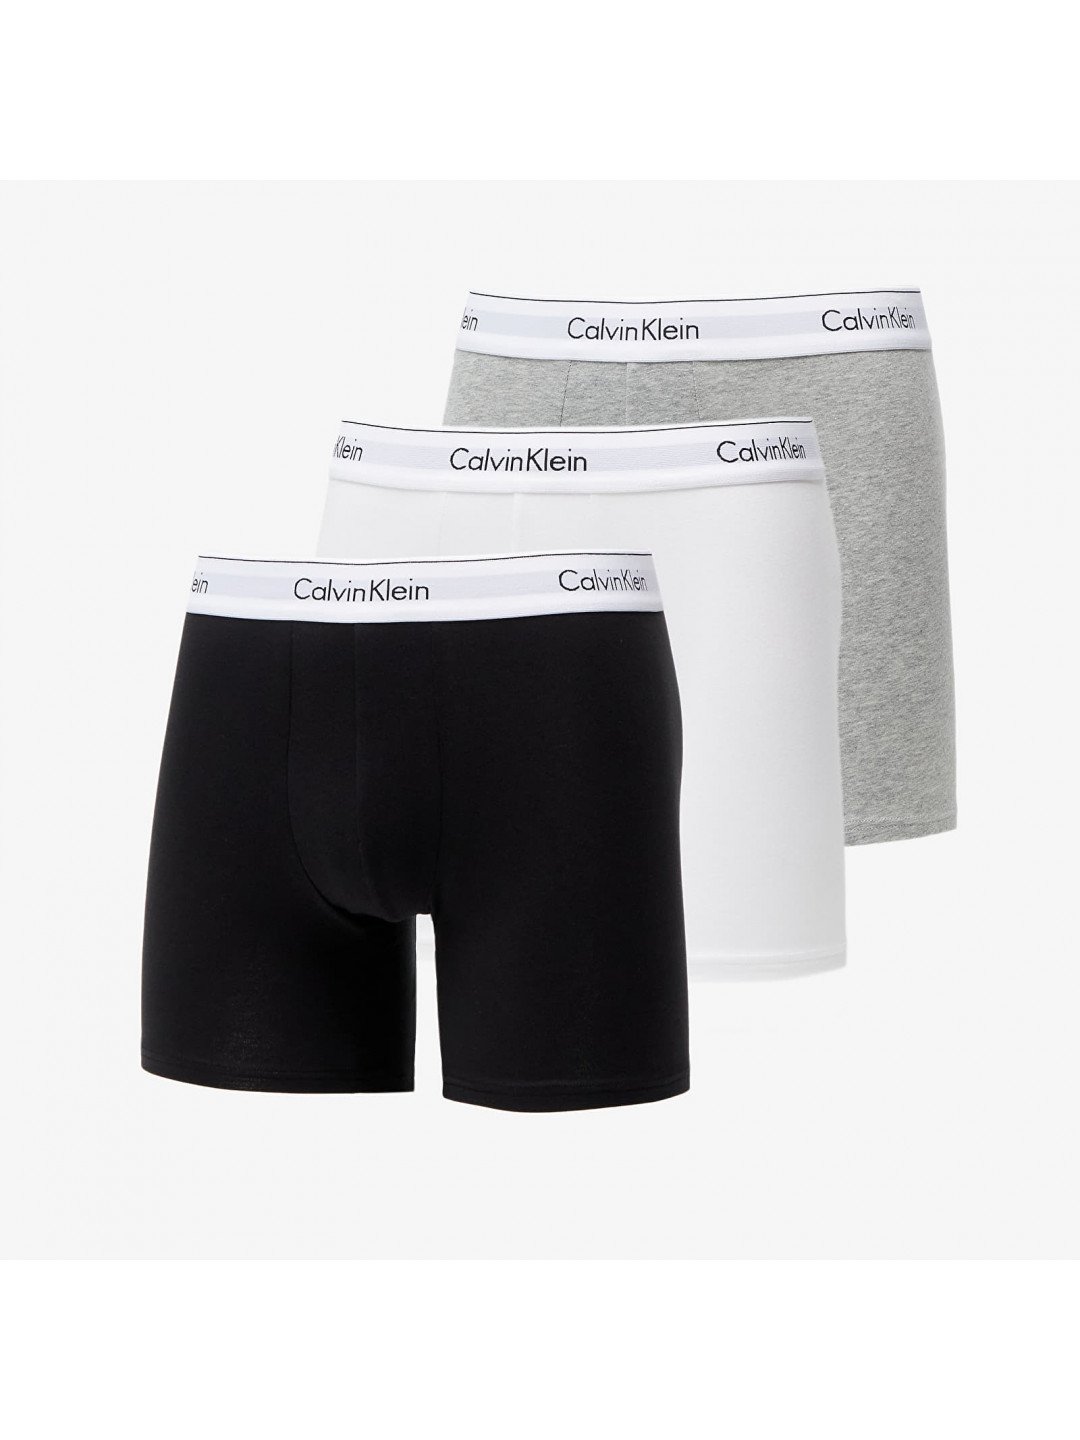 Calvin Klein Modern Cotton Stretch Boxer Brief 3-Pack Black White Grey Heather